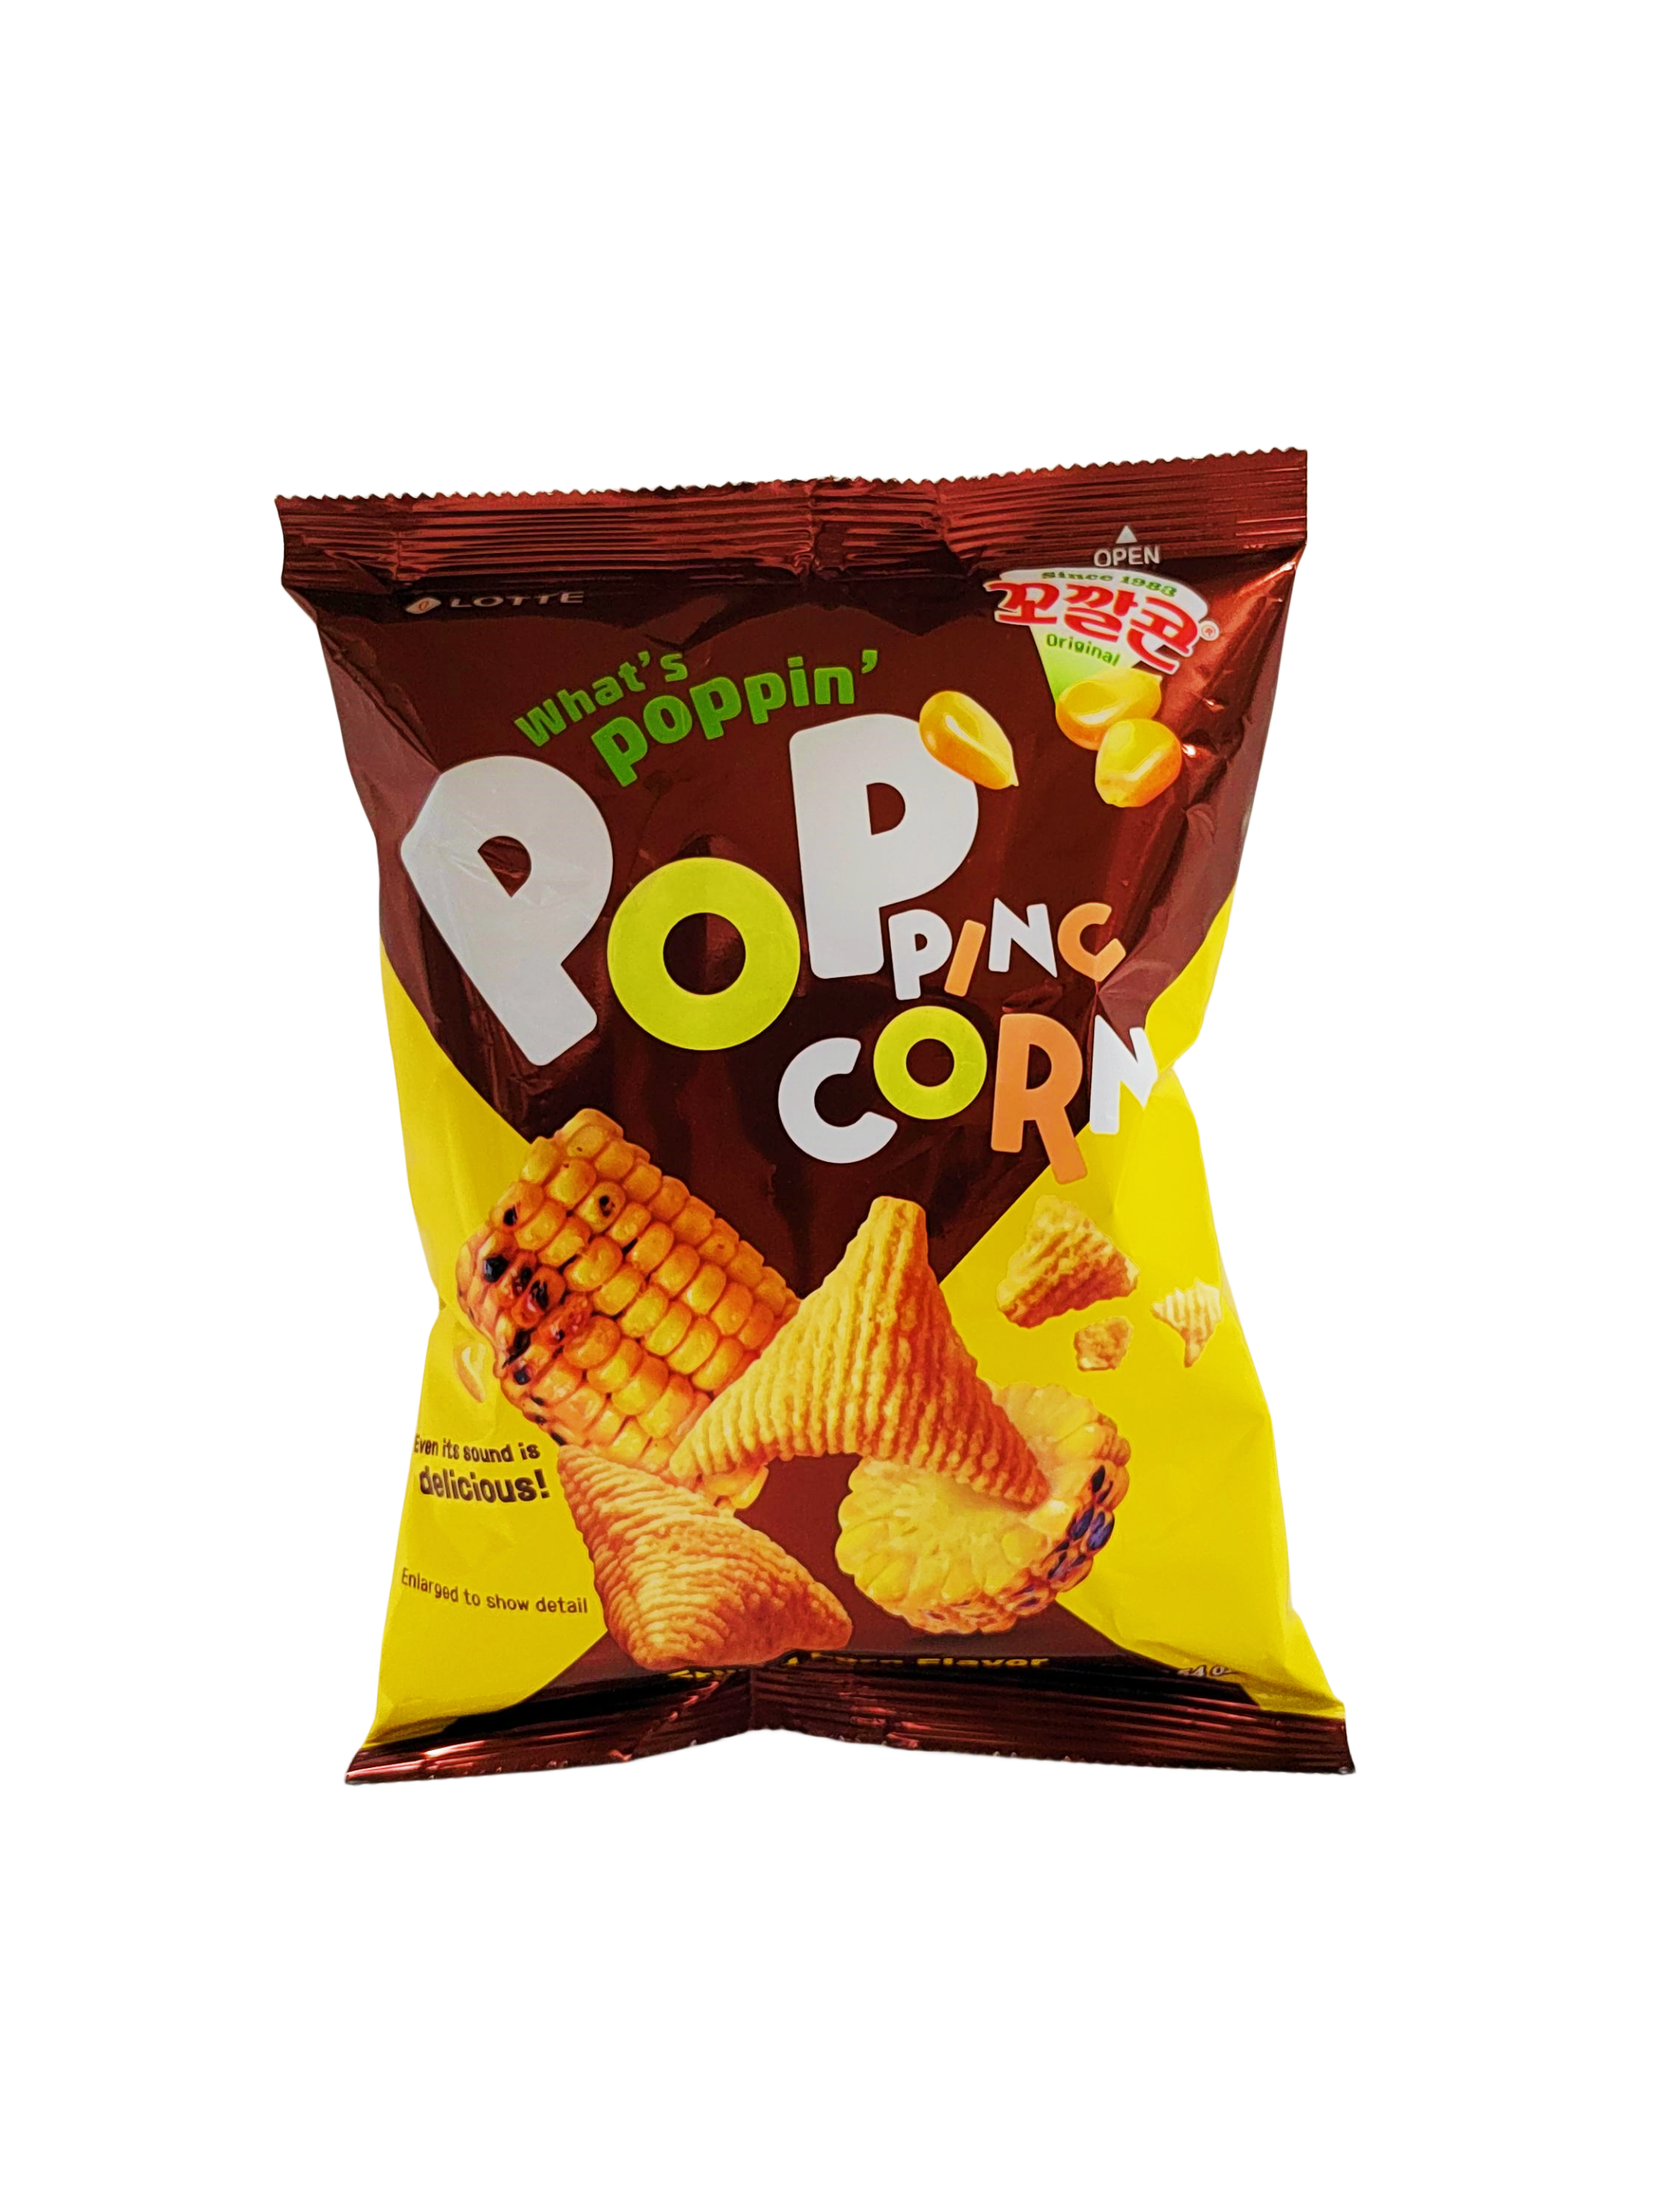 Popping Corn Chips Original Smak 72g Lotte Korean